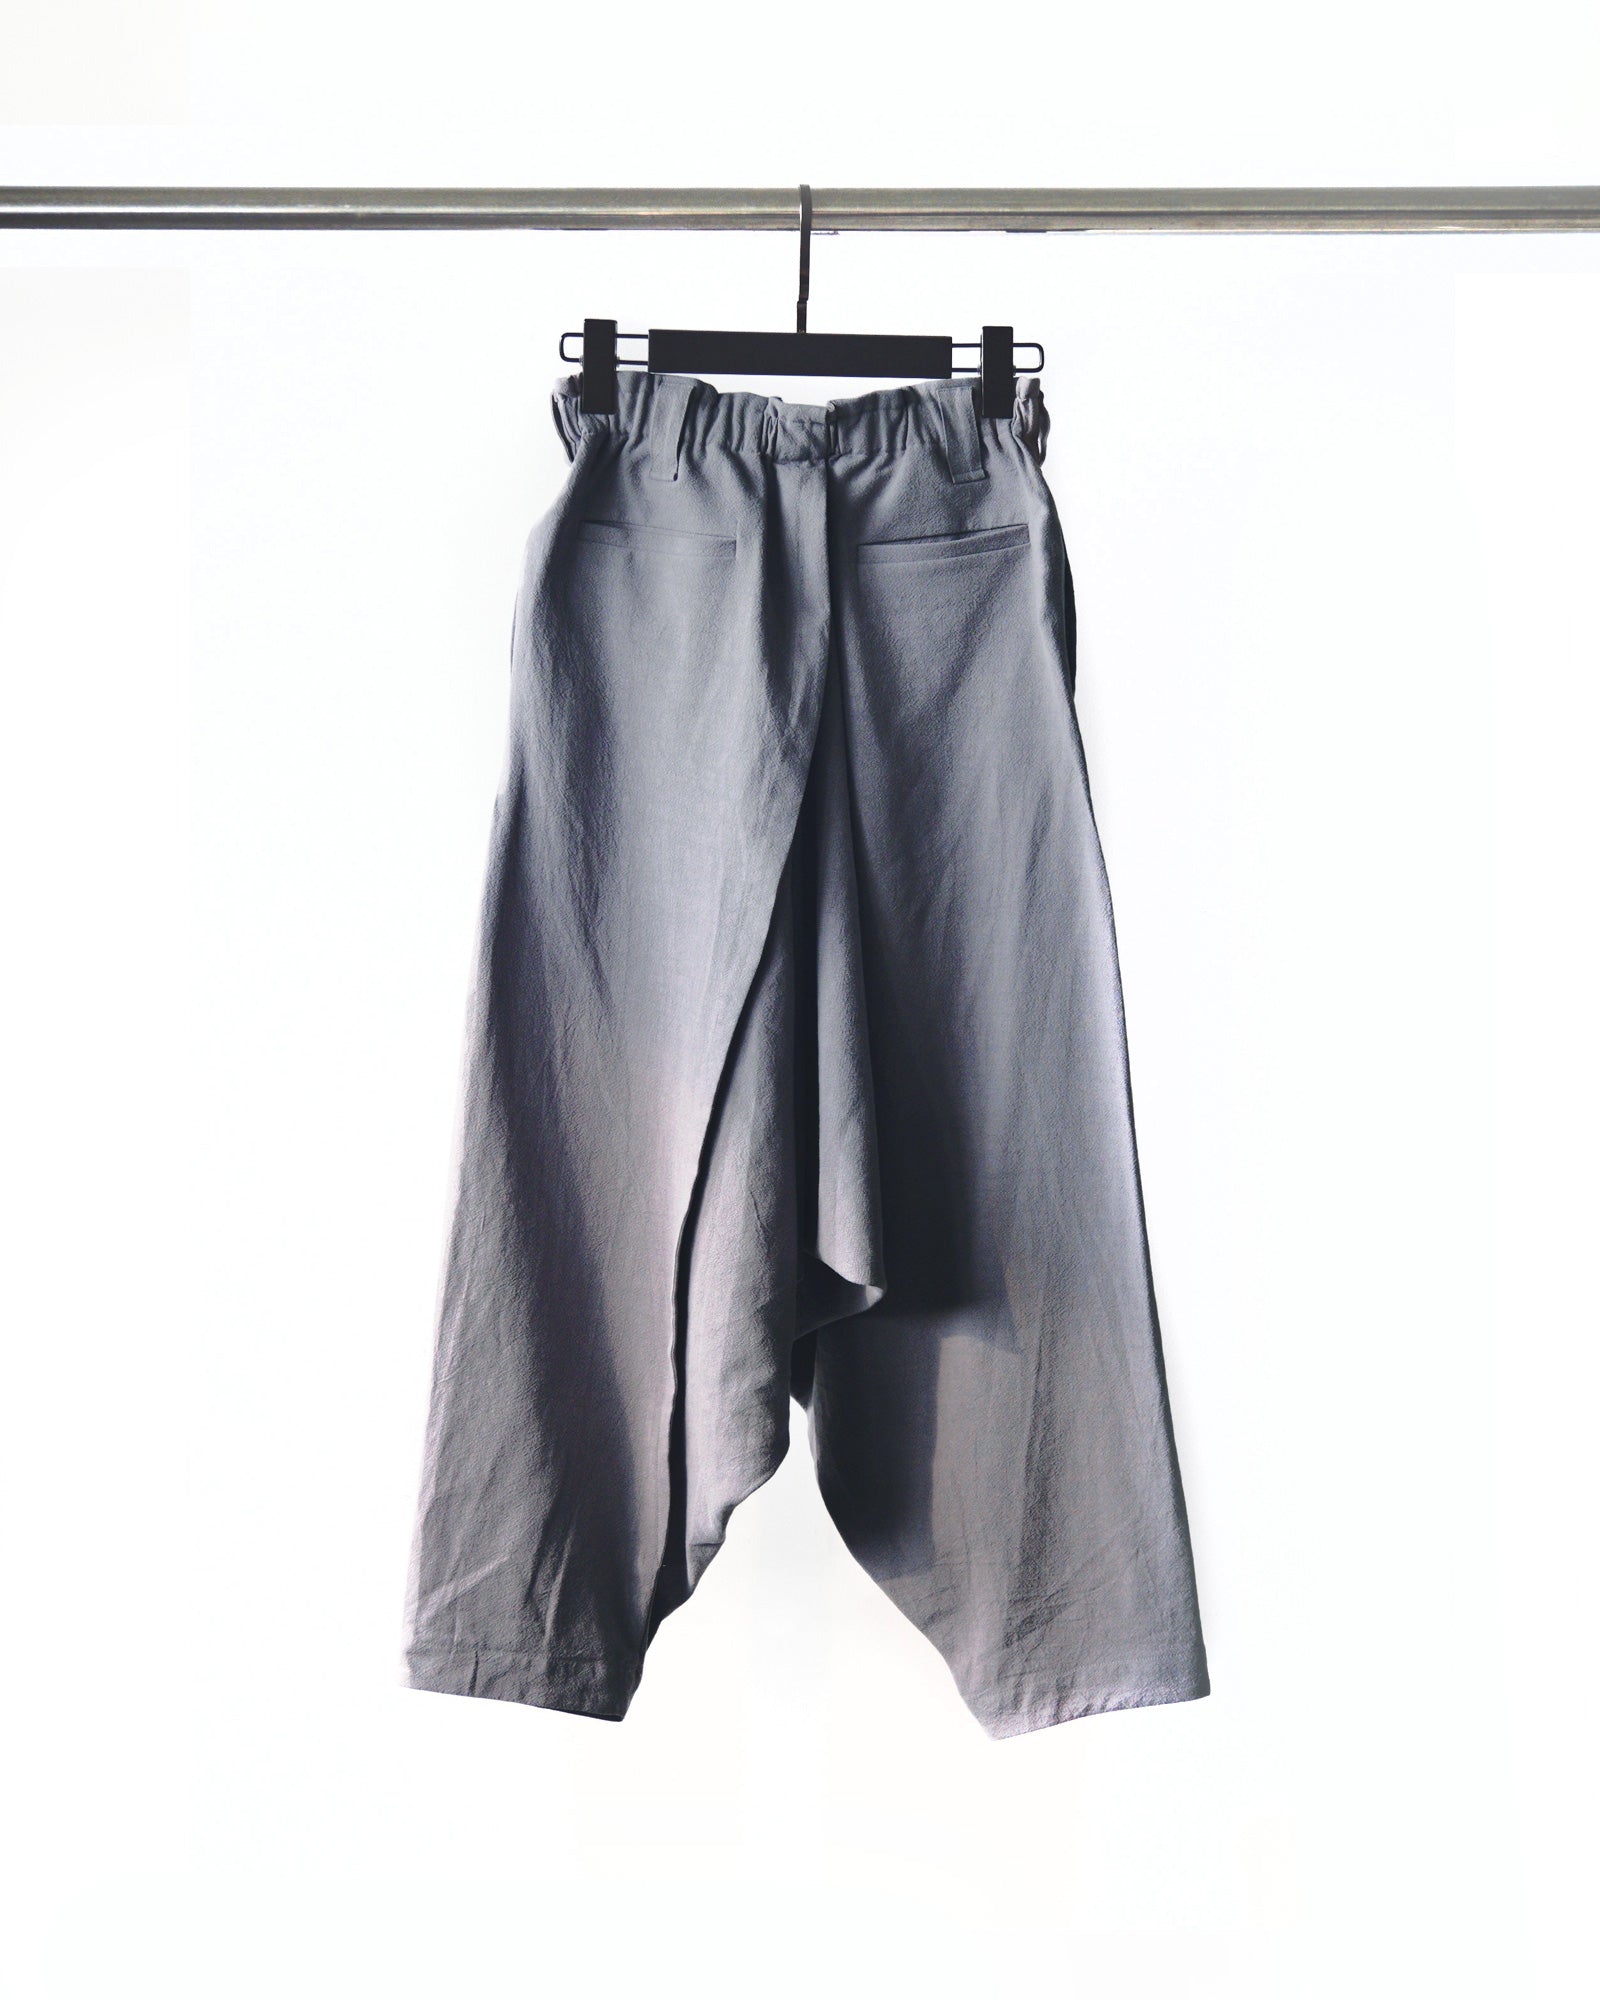 ROSEN O-Ren Trousers in Crosshatched Linen Sz 1